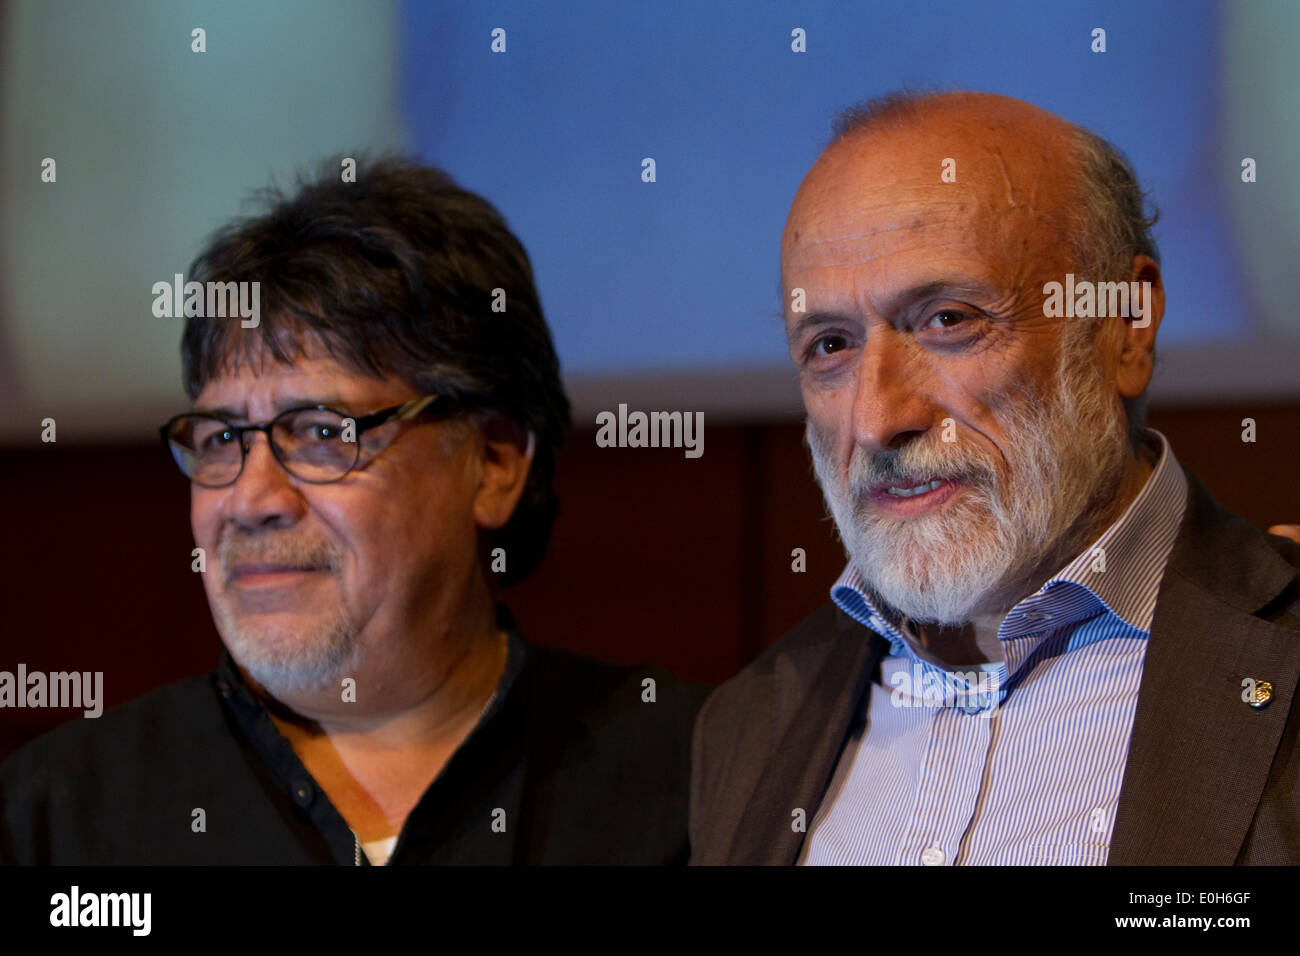 L'écrivain Luis Sepulveda (à gauche) et le fondateur du mouvement Slow Food Carlo Petrini (à droite) lors d'une conférence au Salon du livre de Turin Banque D'Images